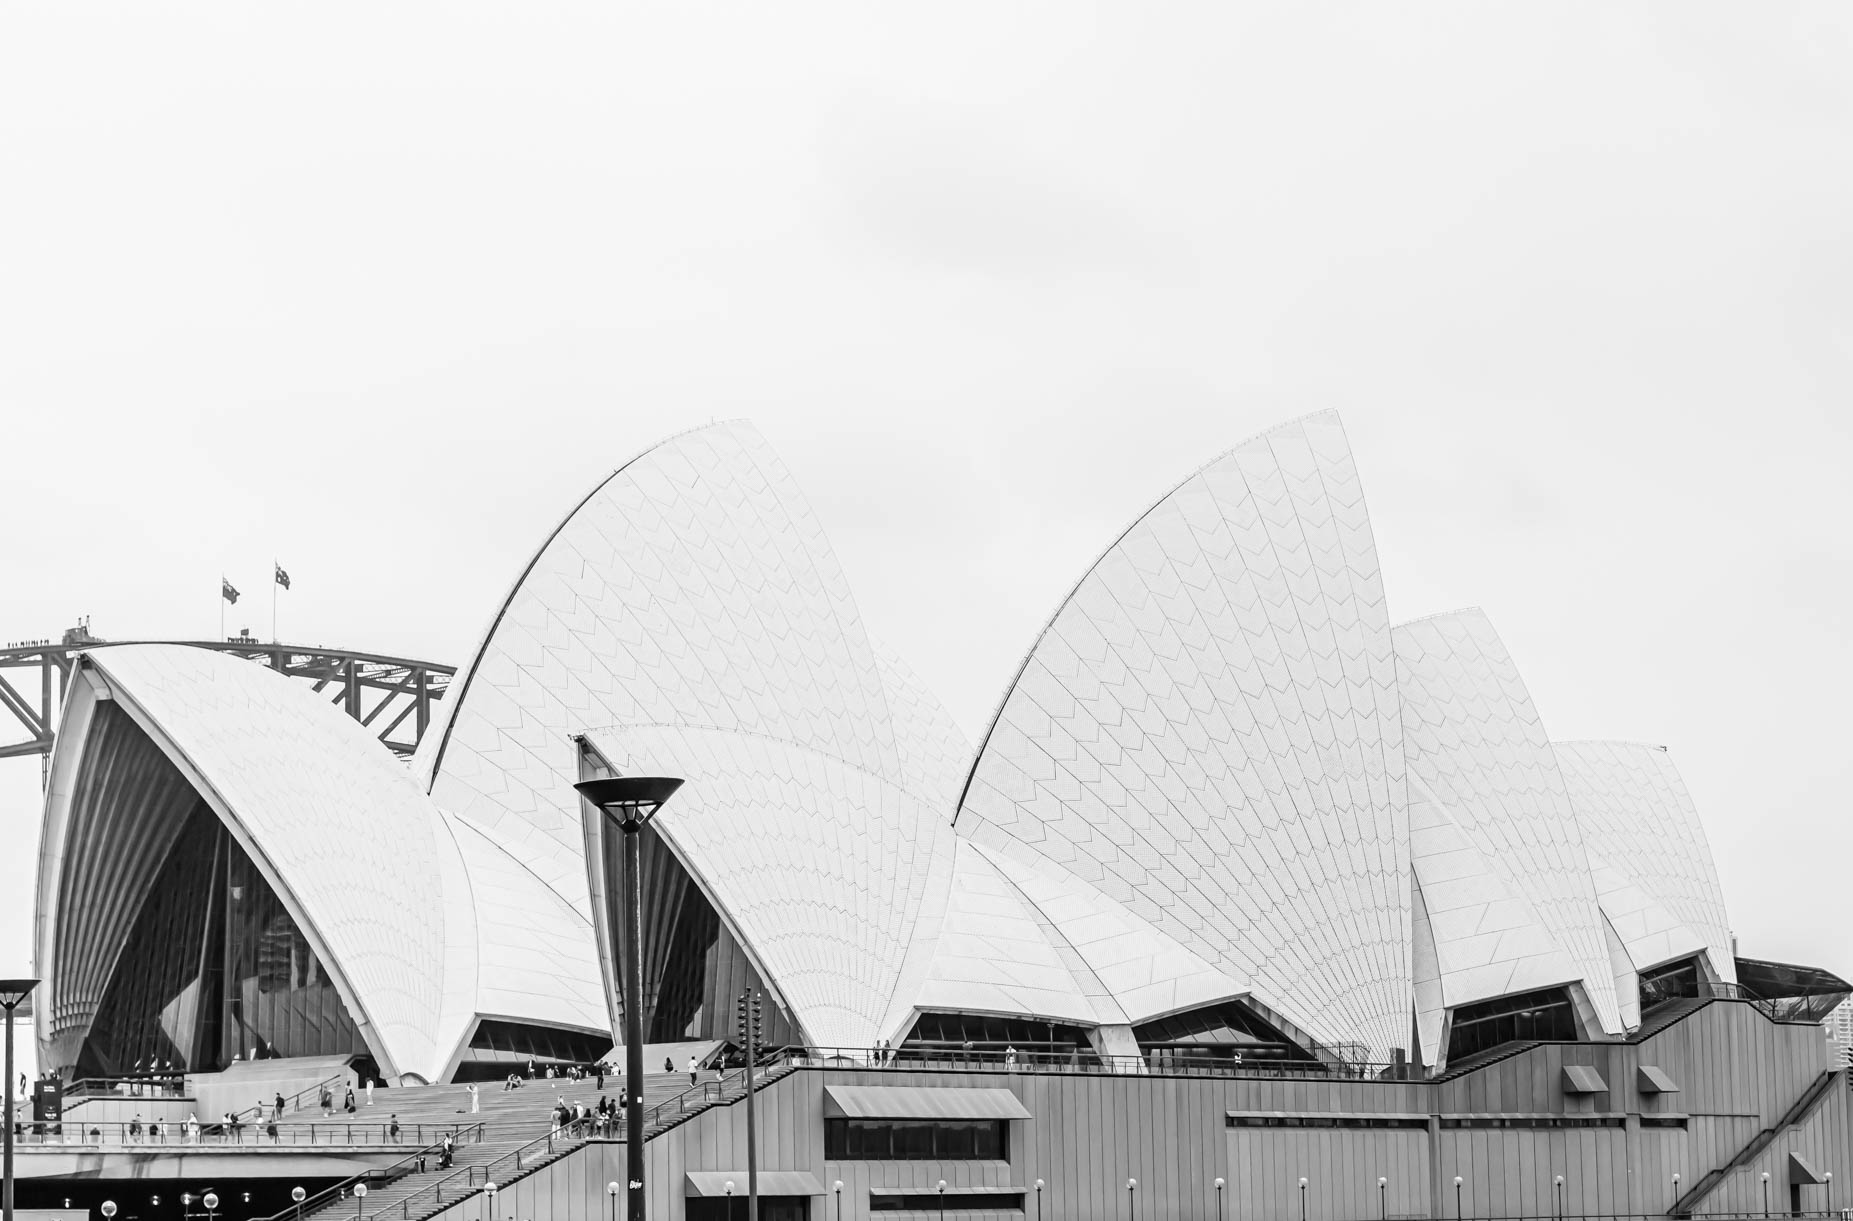 Elternzeit Reise Australien - Reisebericht Sydney